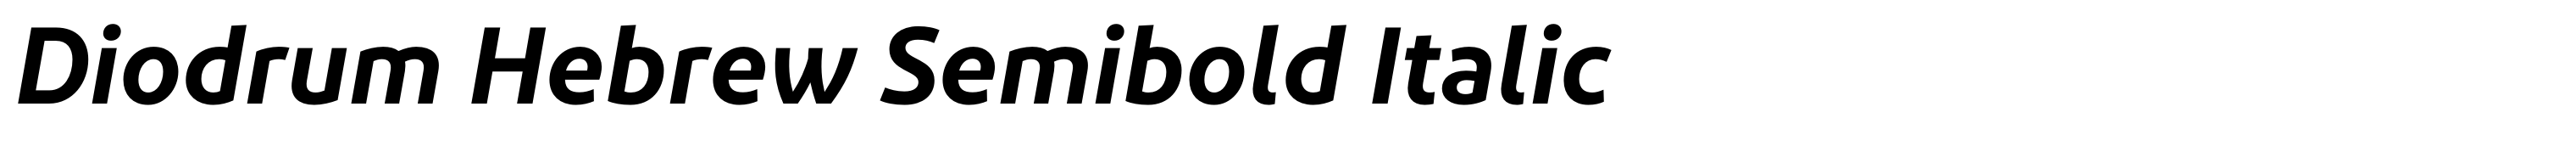 Diodrum Hebrew Semibold Italic